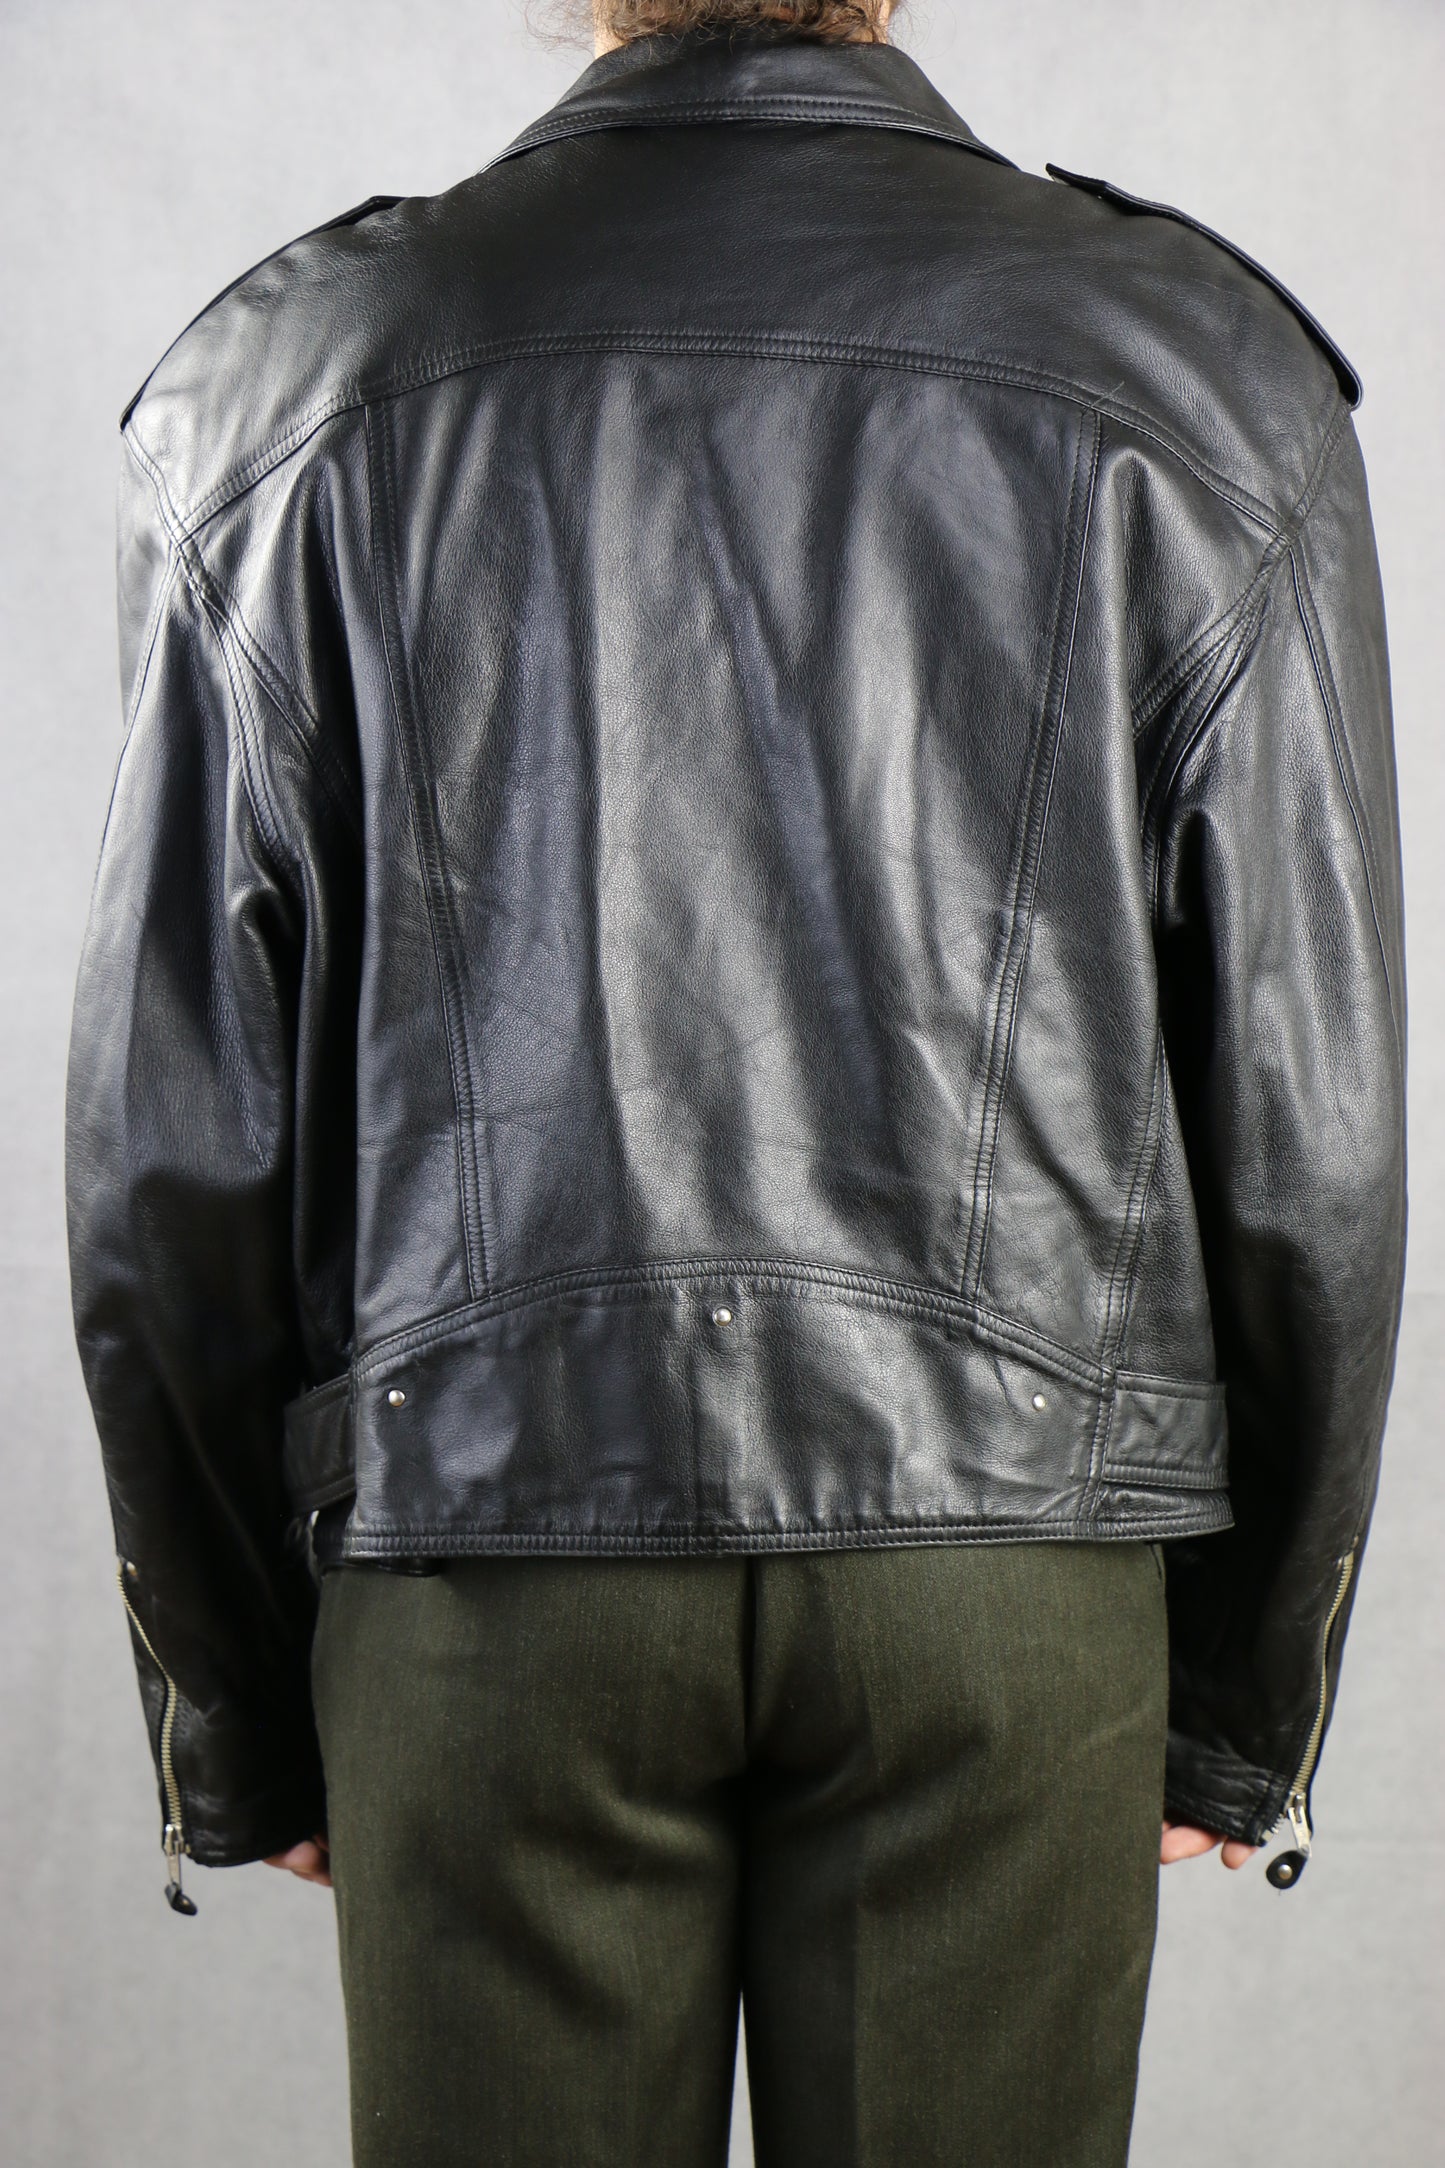 Biker Leather Jacket 'XL' - vintage clothing clochard92.com